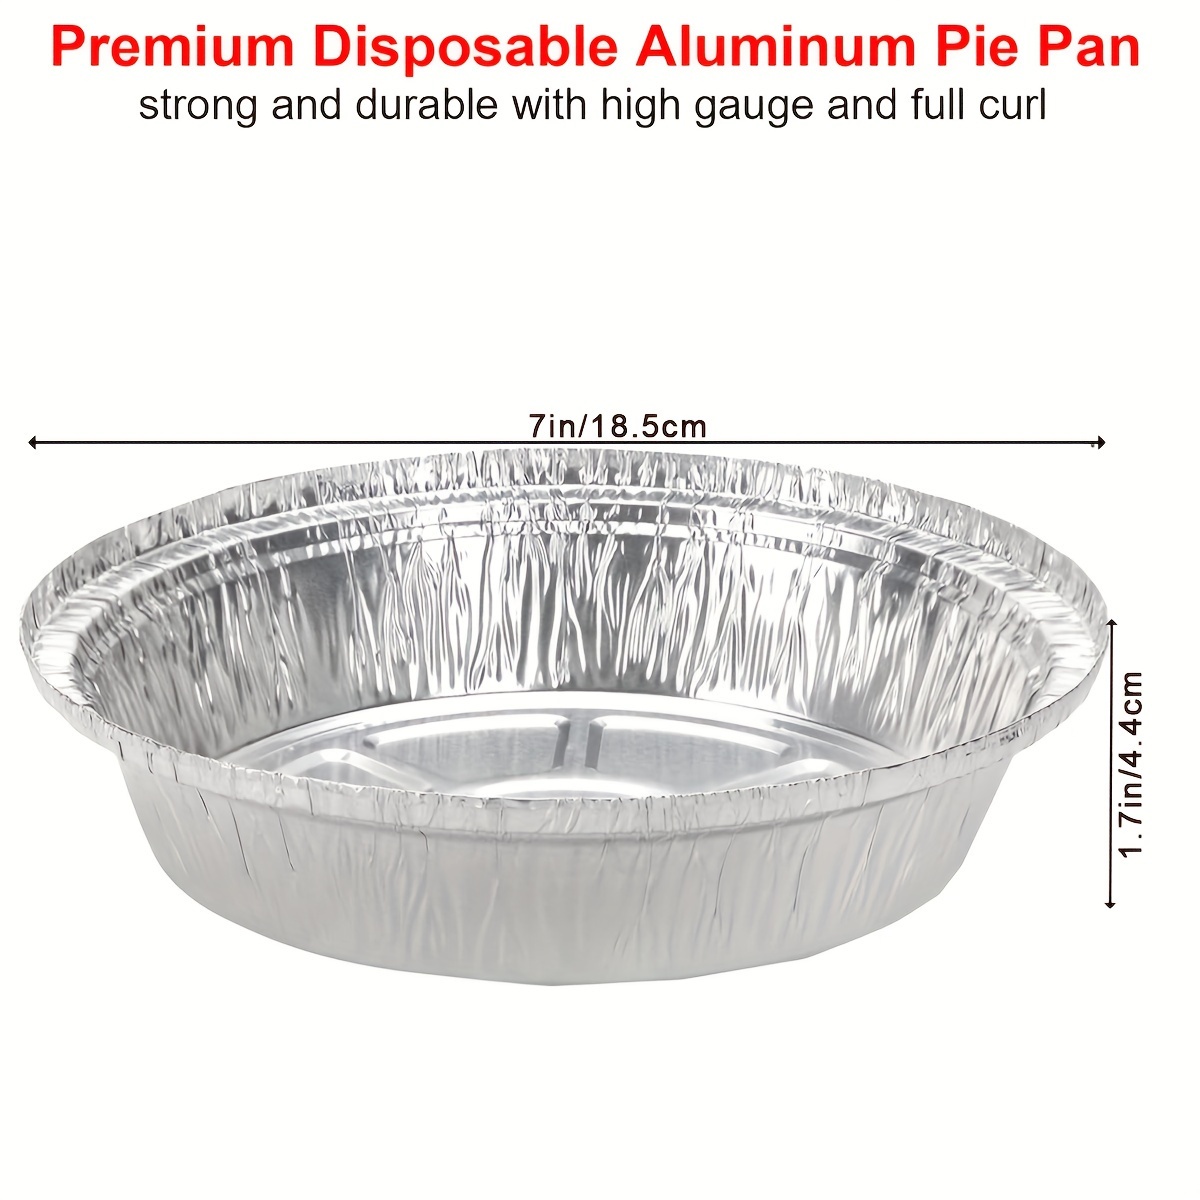 7in. Round Aluminum Pan